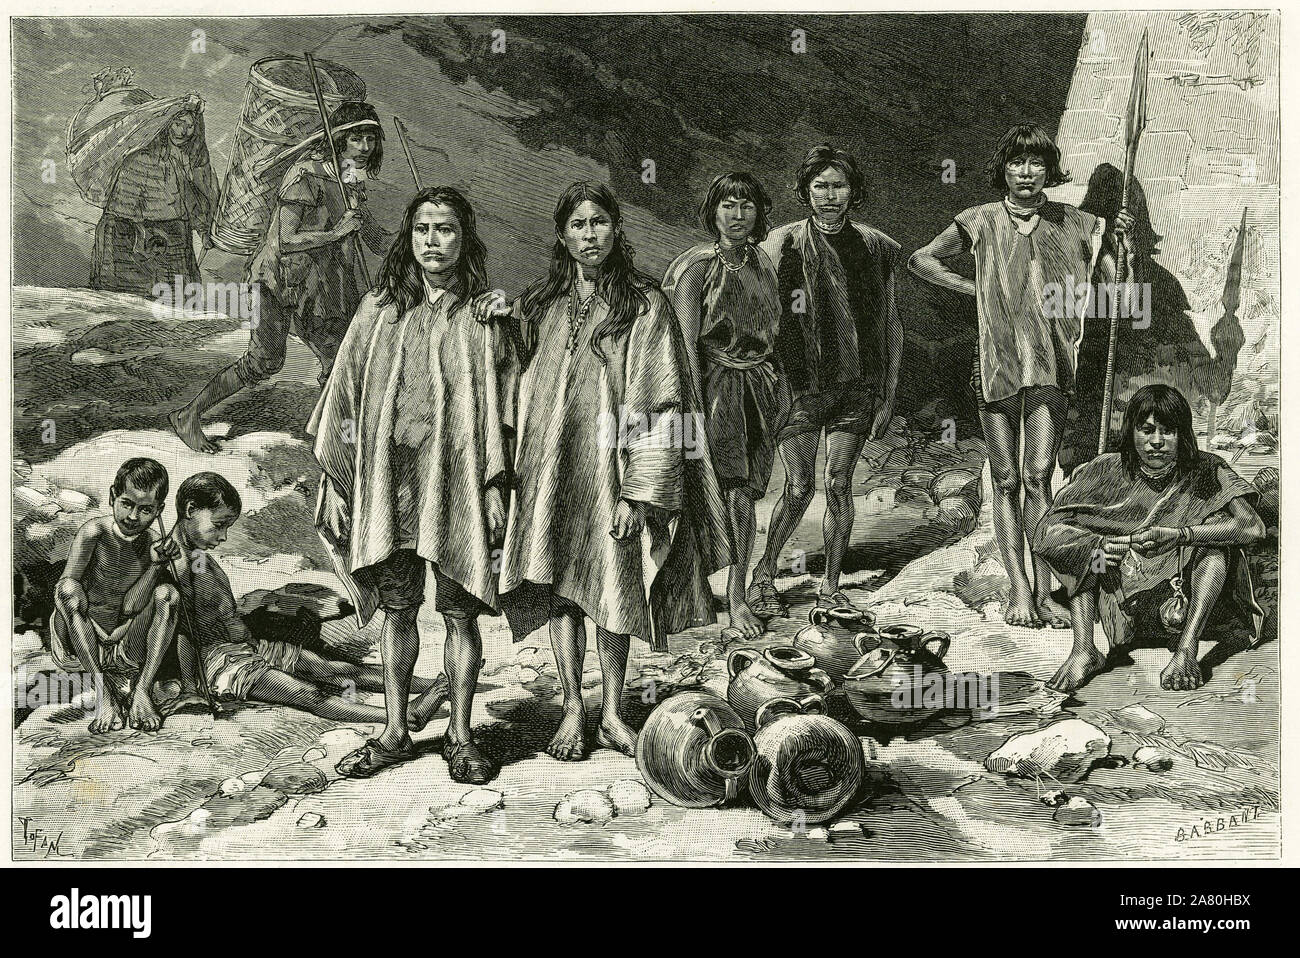 Types d'indiens des cordilleres de l'Equateur, a gauche, au fond, Yumbos de Nanegal, au premier plan Lojanos, au milieu un couple de Zaparos, a droite Stock Photo